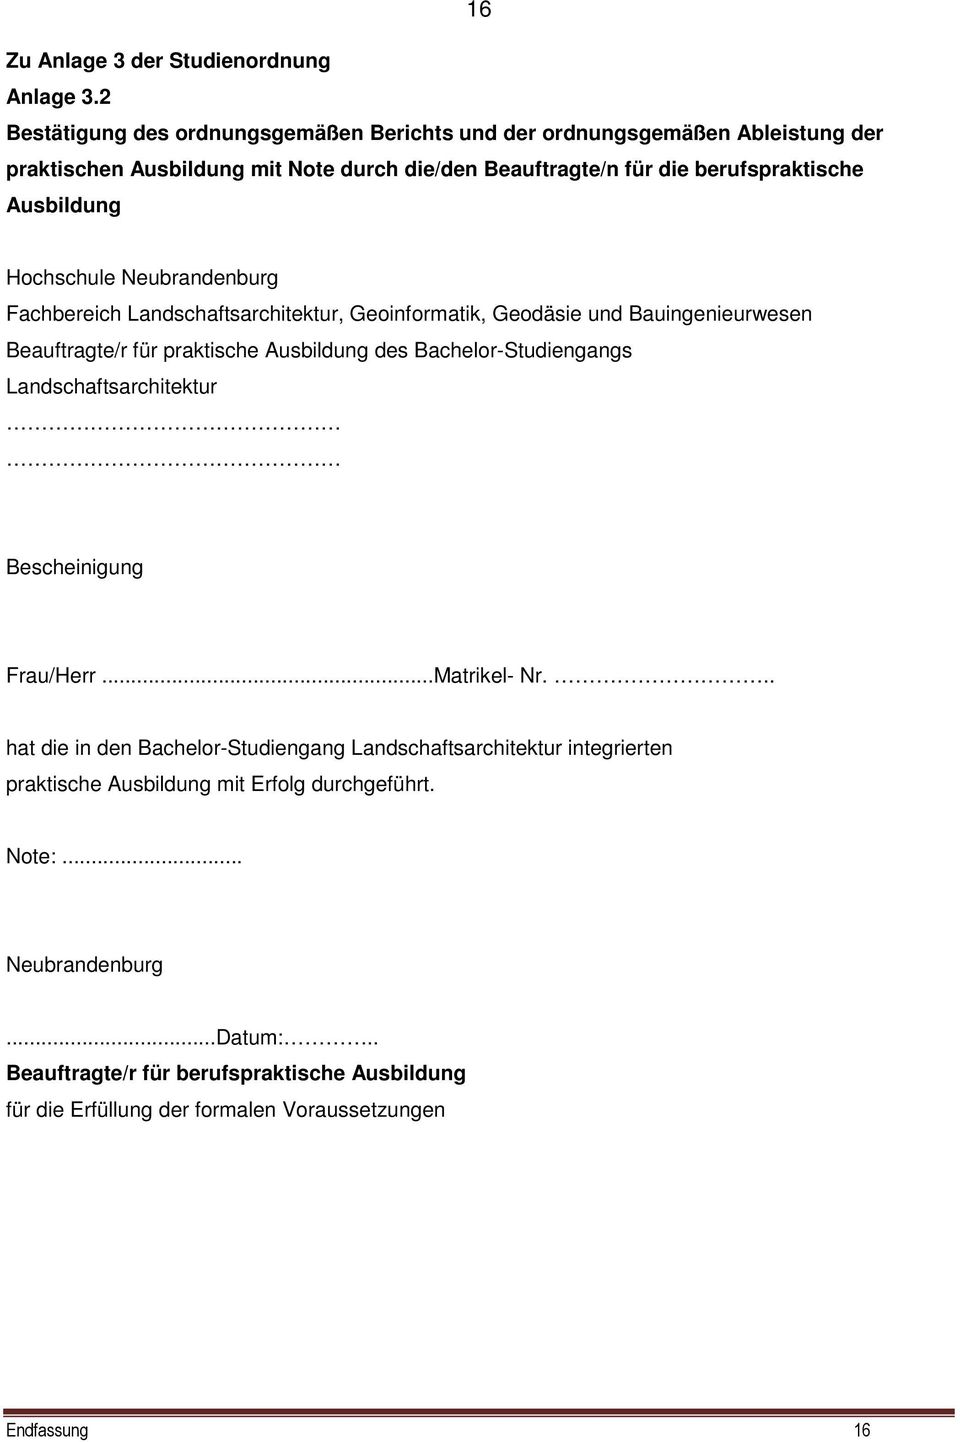 Hochschule Neubrandenburg Fachbereich Landschaftsarchitektur, Geoinformatik, Geodäsie und Bauingenieurwesen Beauftragte/r für praktische Ausbildung des Bachelor-Studiengangs